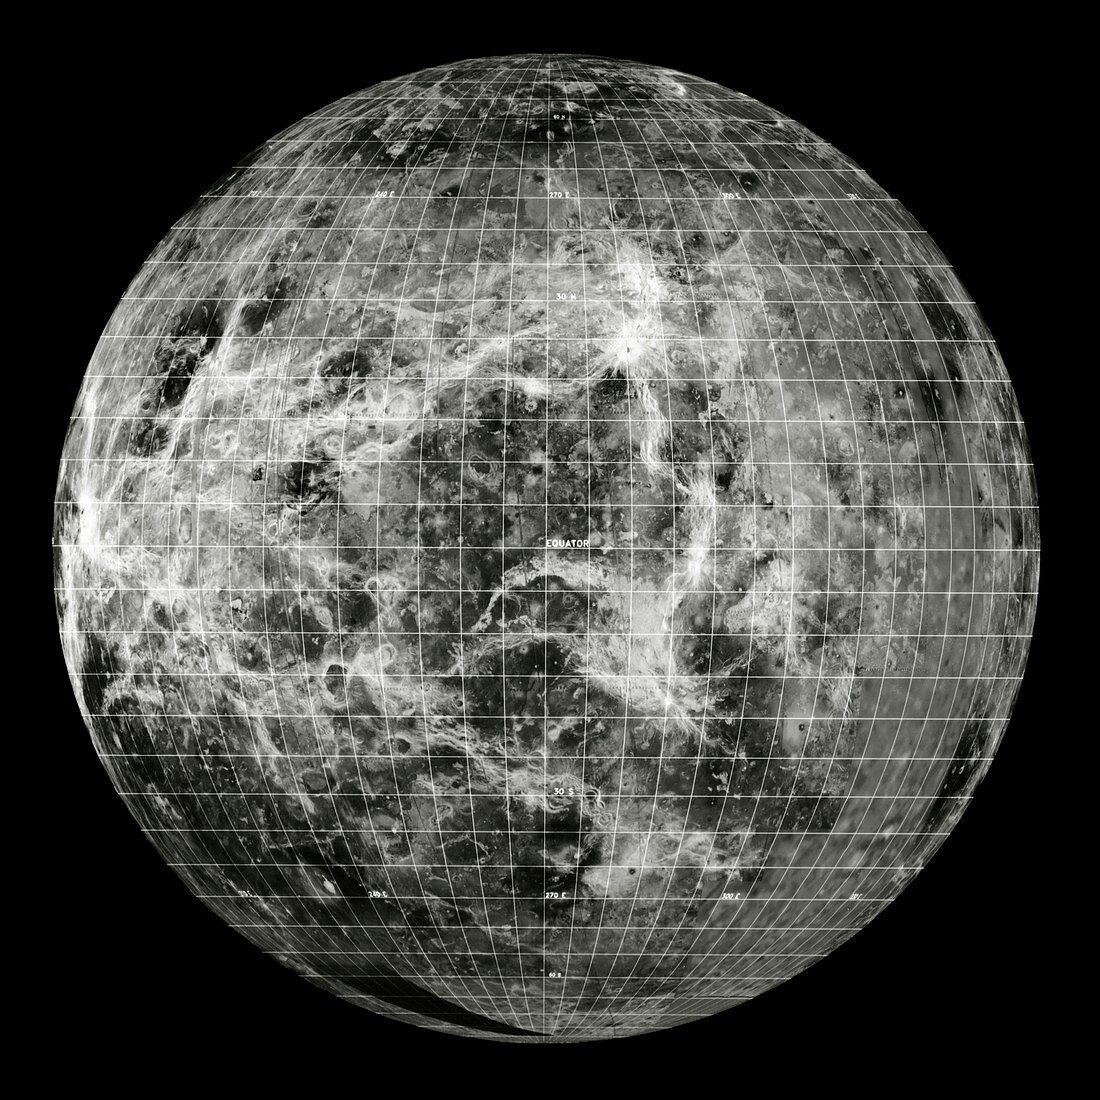 Magellan mosaic of Venus west hemisphere with grid